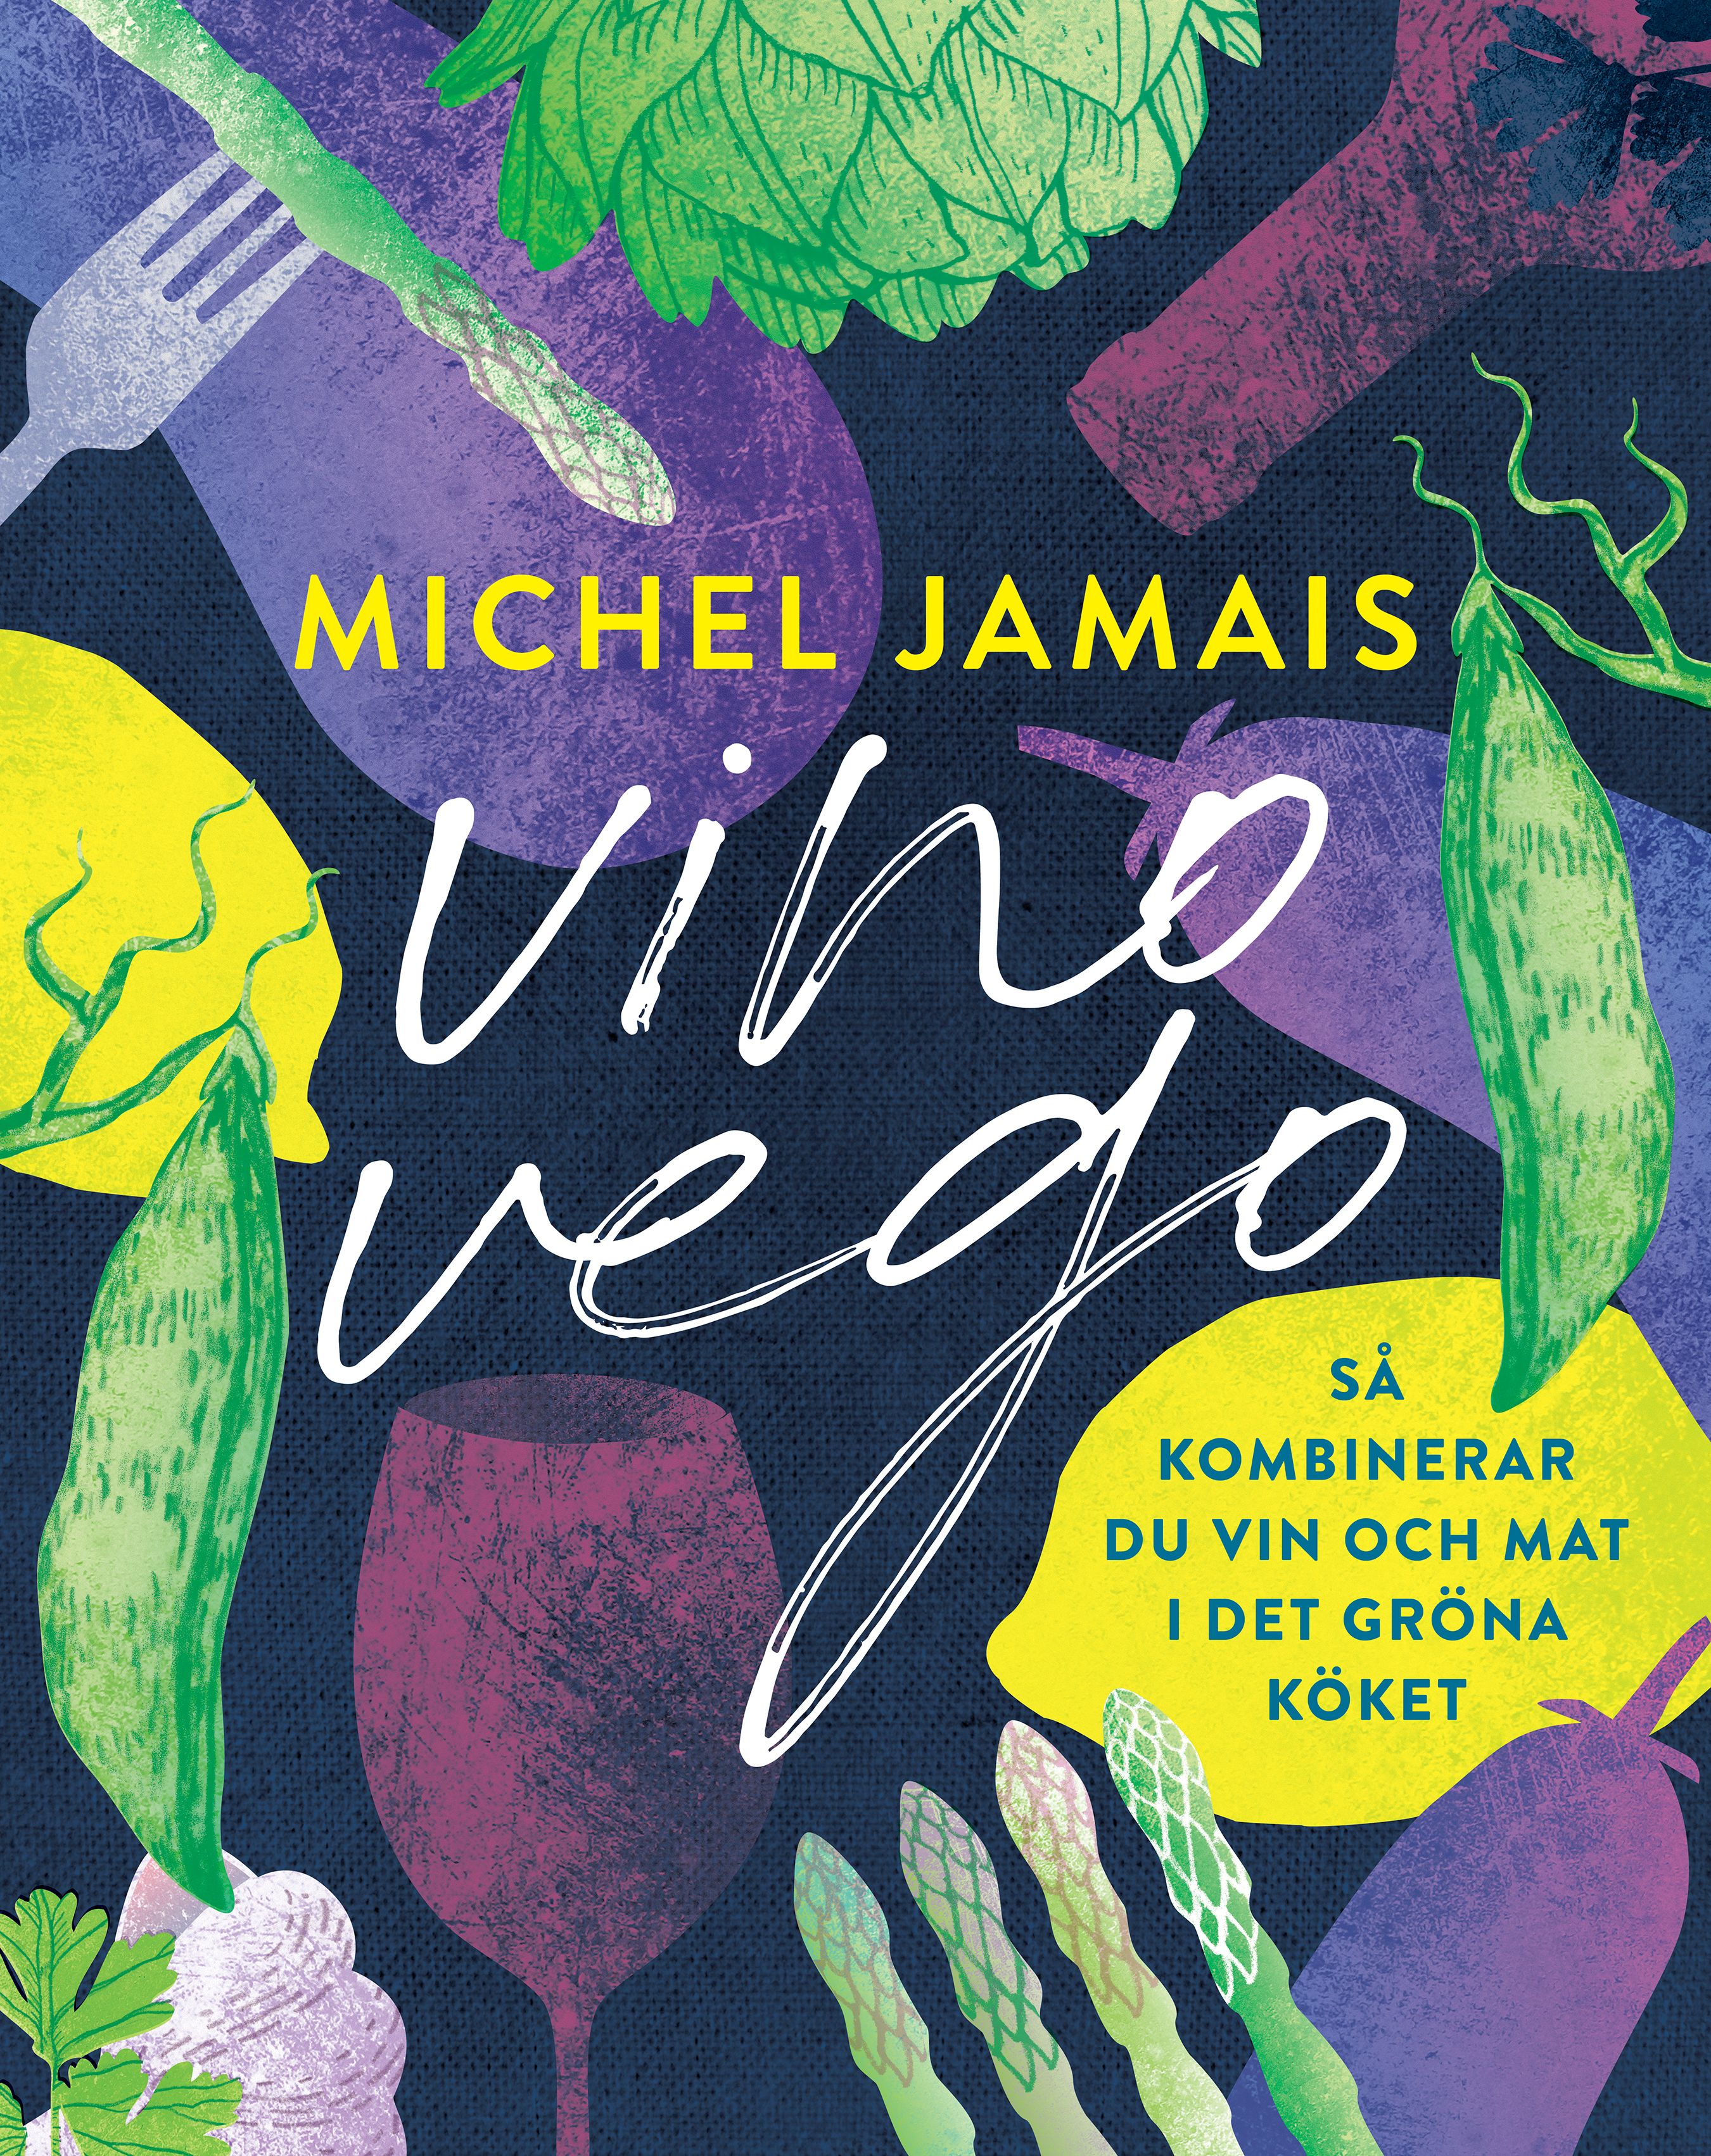 Vino vego : så kombinerar du vin och  mat i det gröna köket, e-bok av Michel Jamais